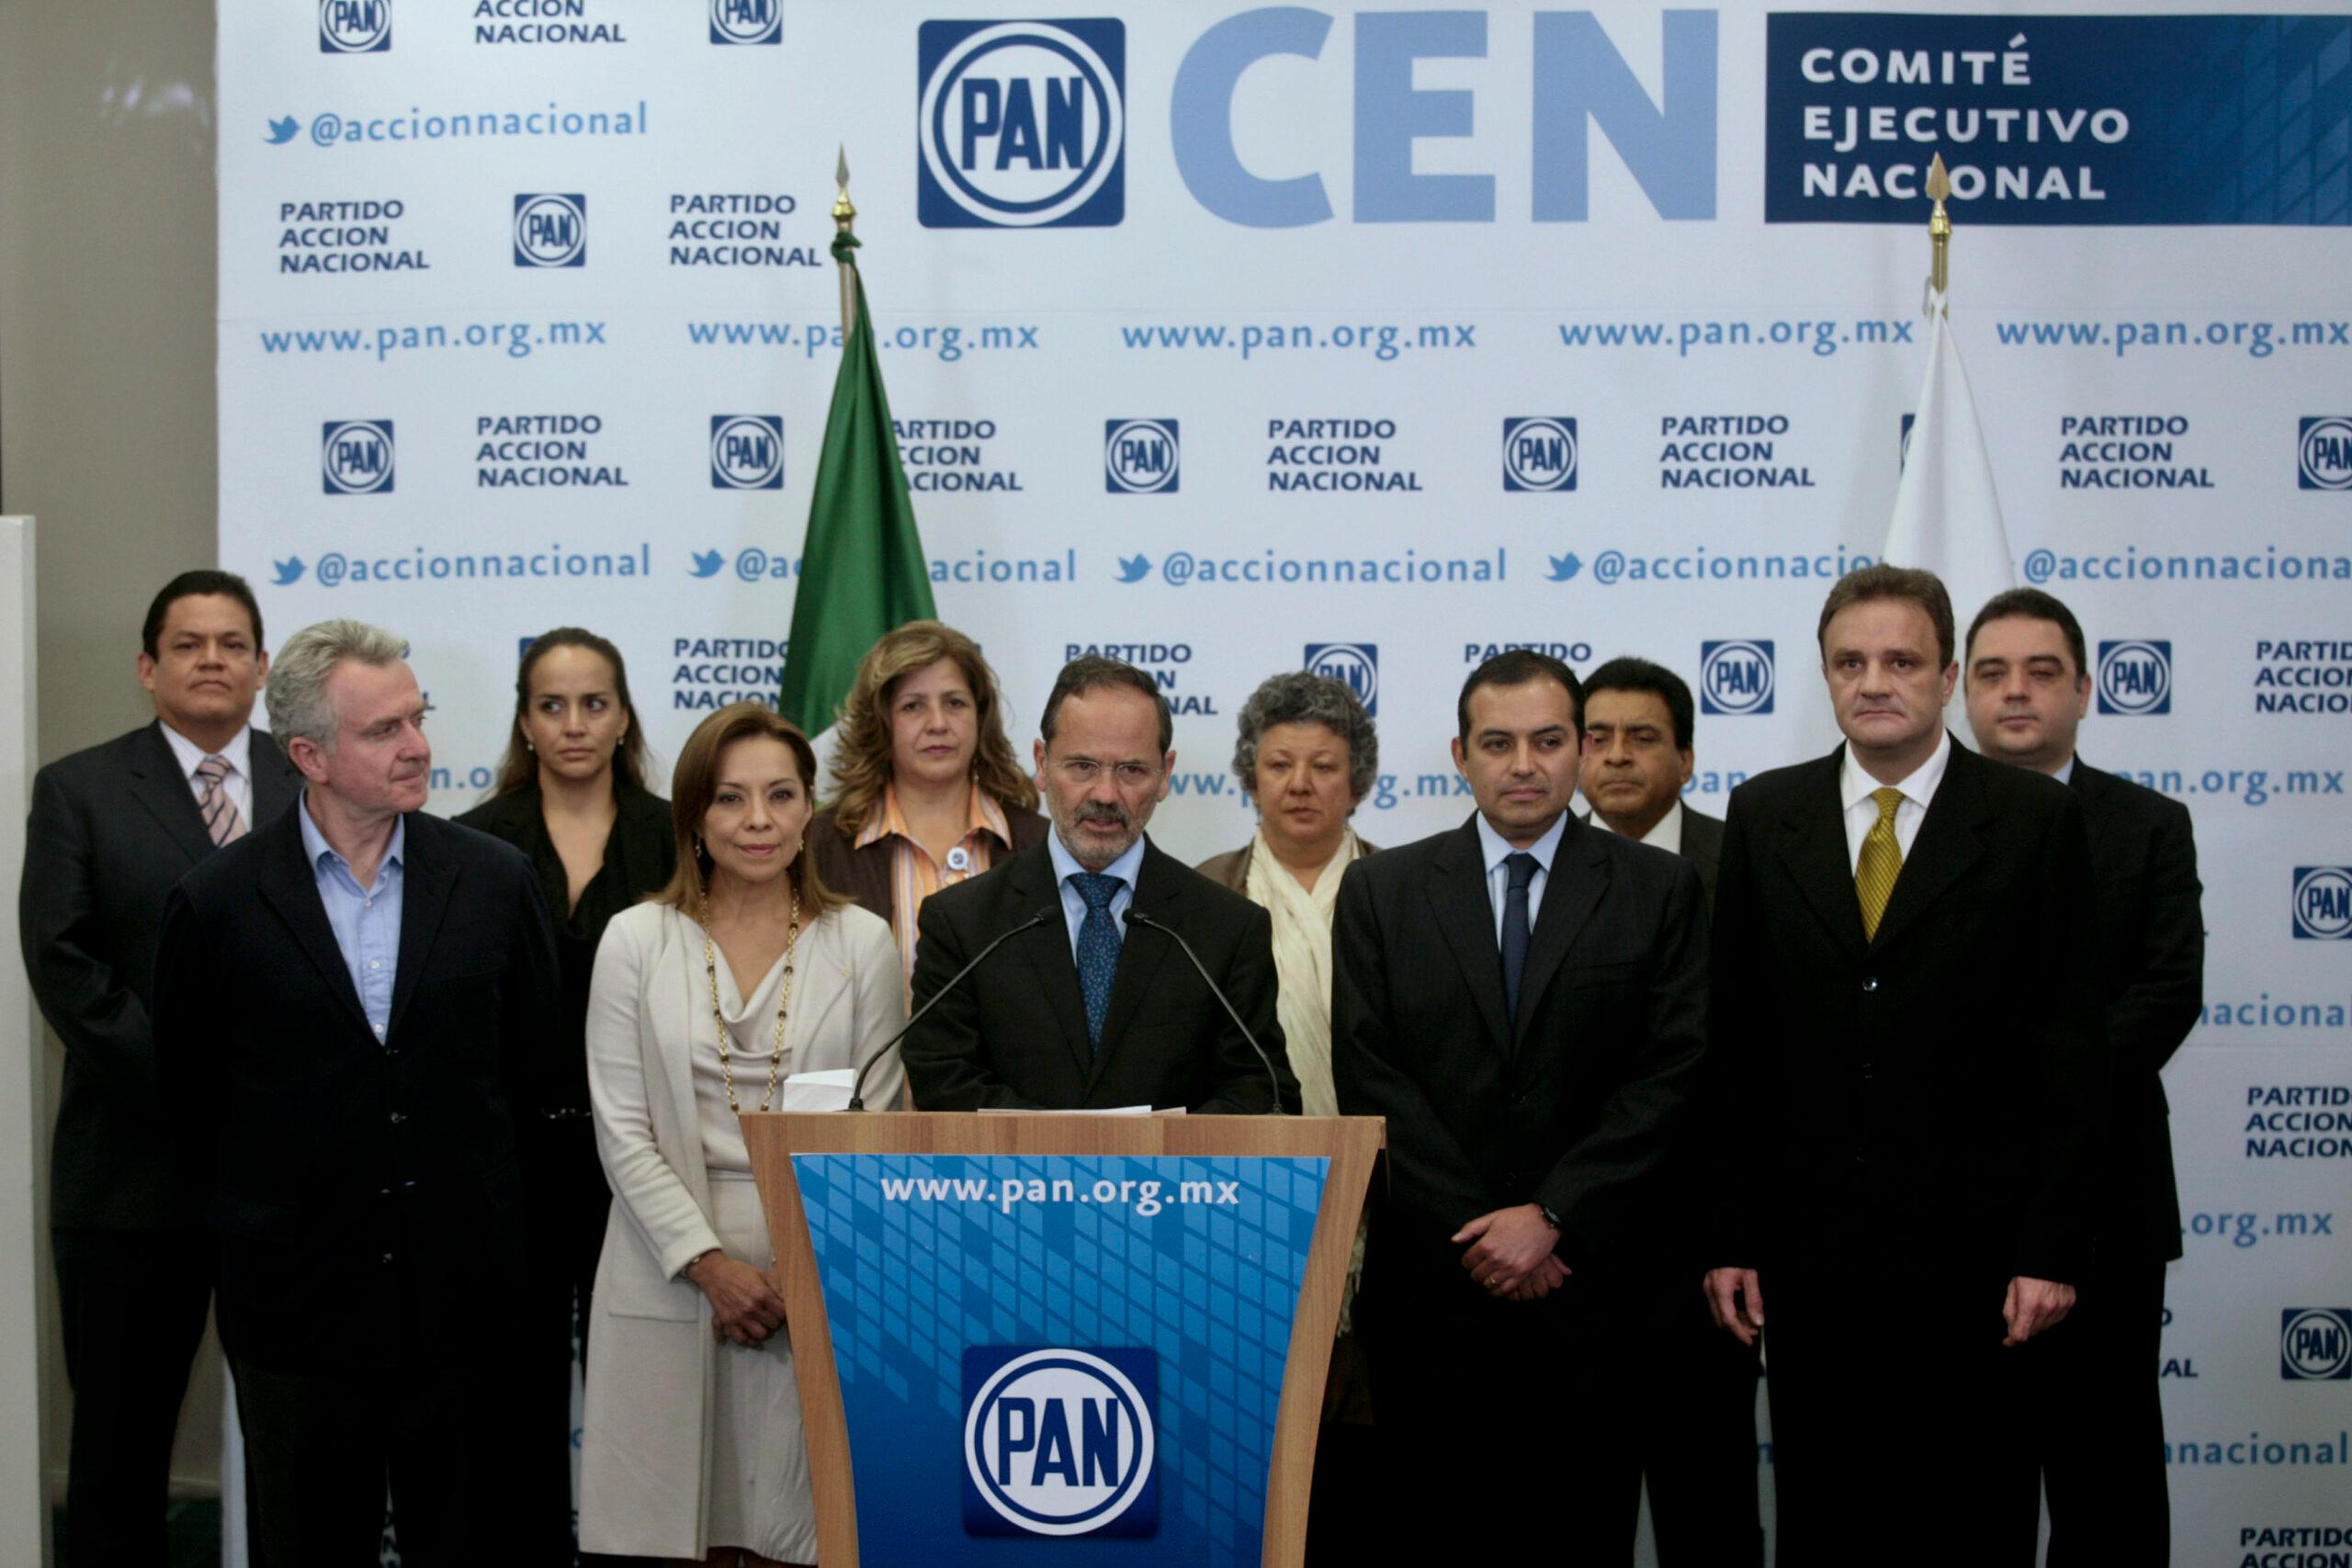 Vázquez Mota integra a Creel y Cordero en su campaña